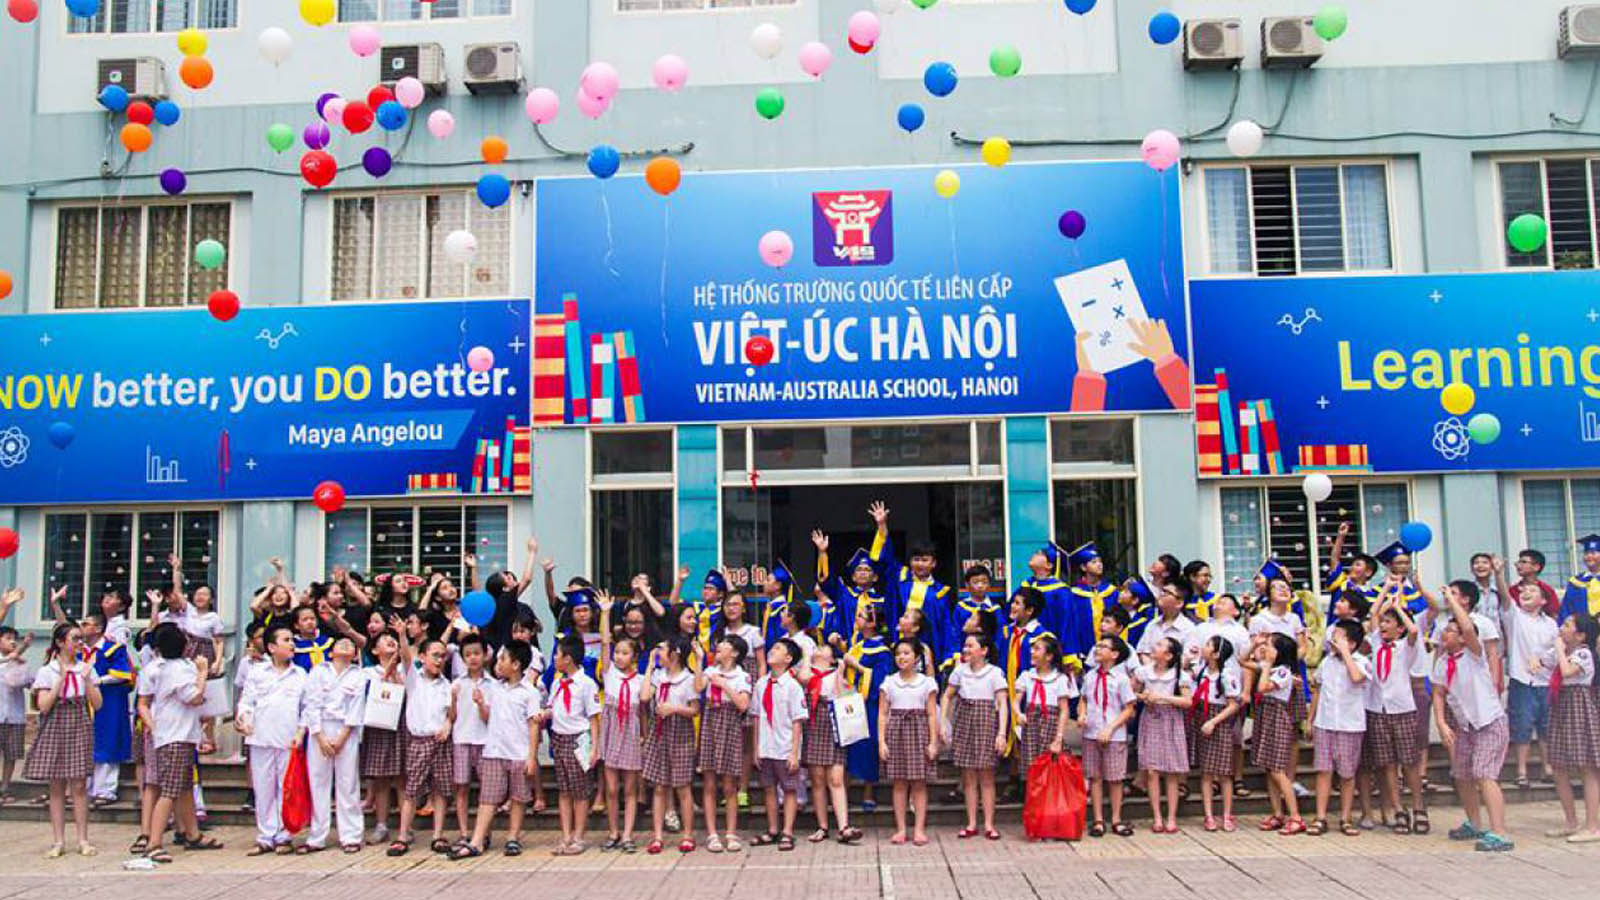 Trường Liên cấp Việt-Úc Hà Nội